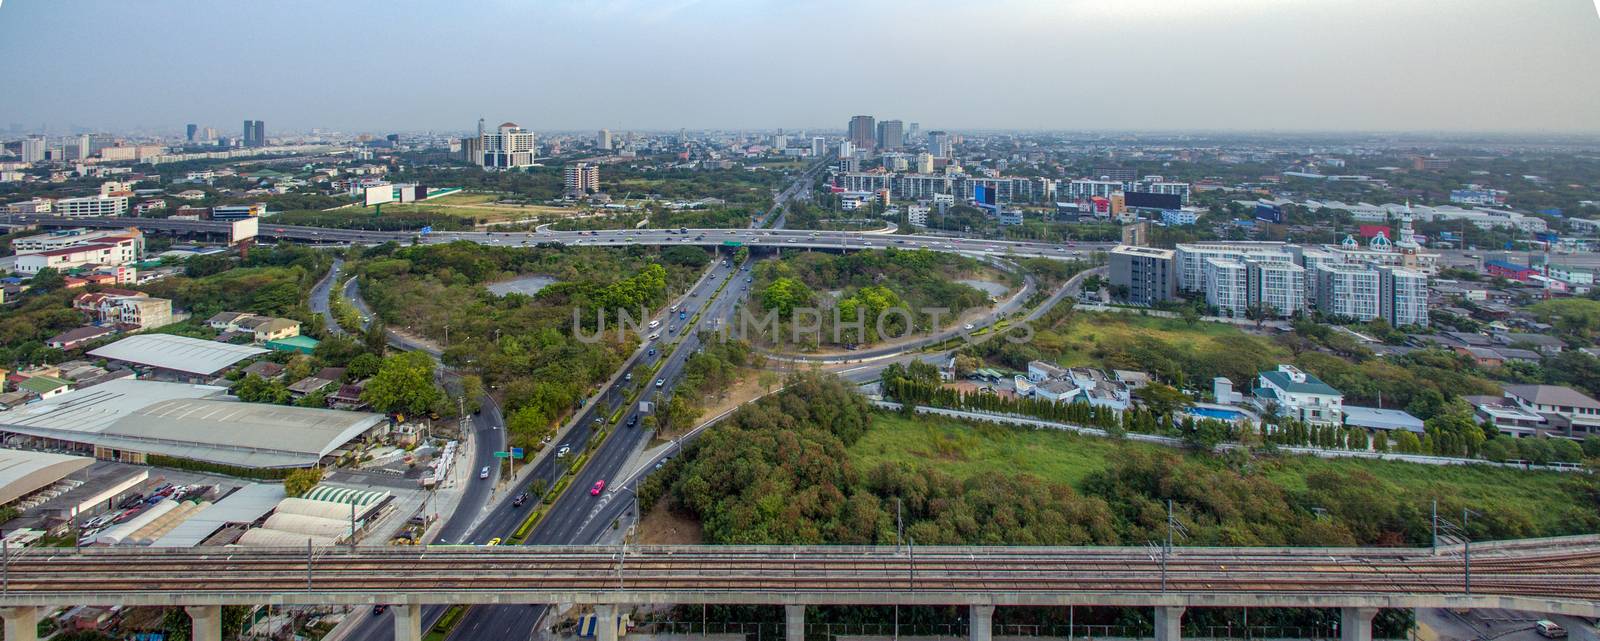 Bangkok Motorway to Suvarnabhumi Airport, Srinakarin Road, Patta by praethip